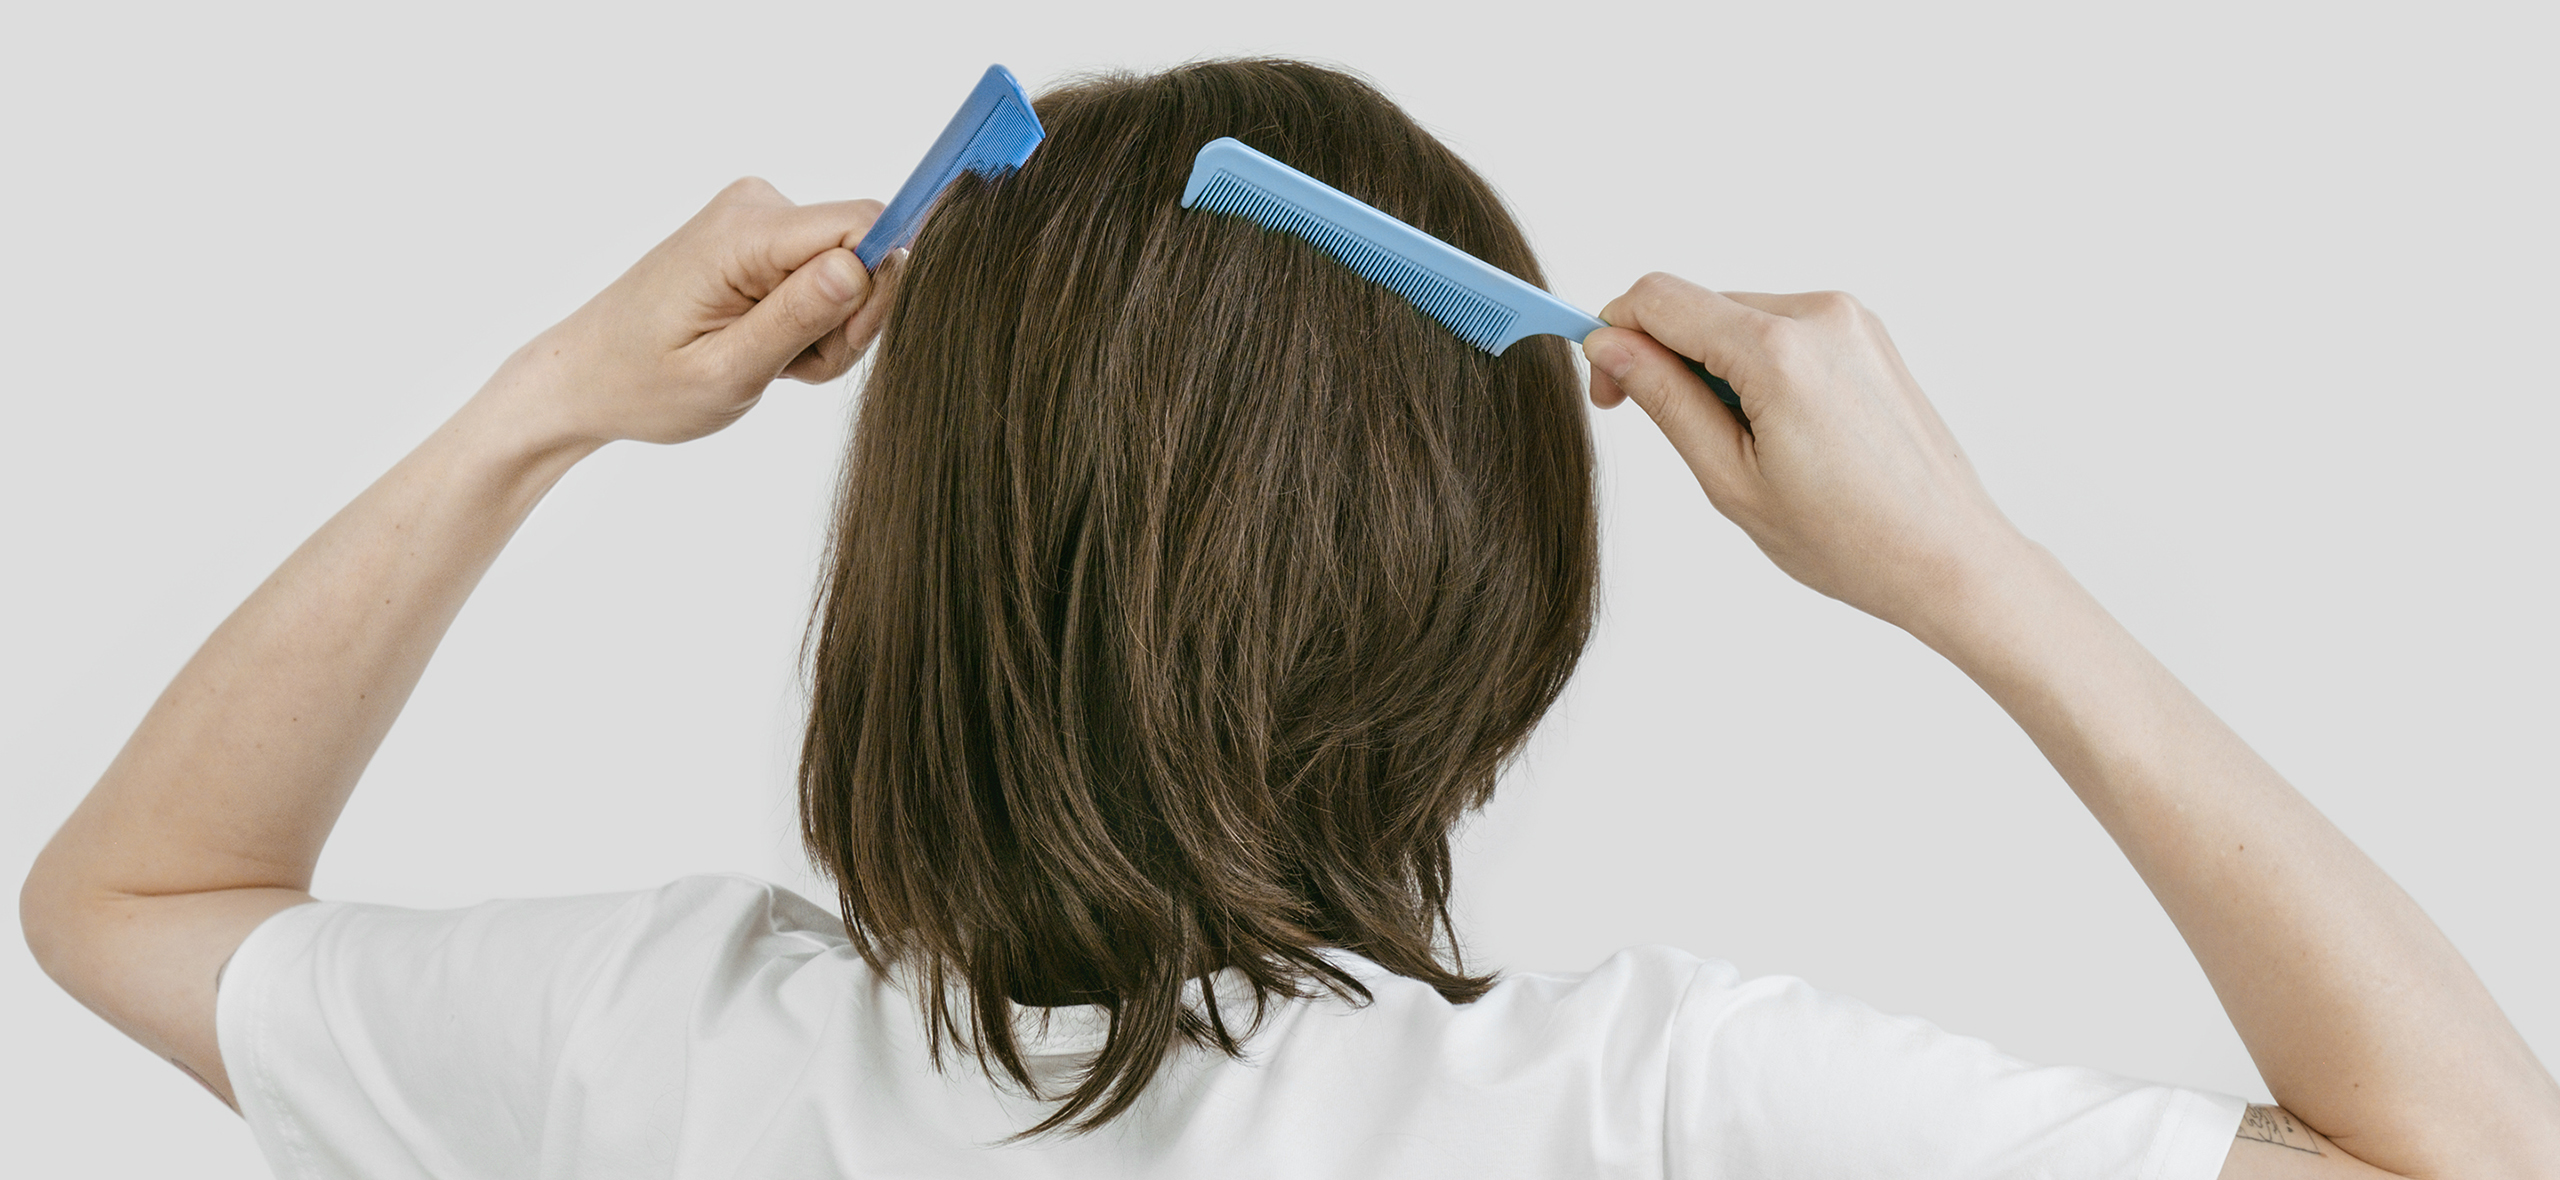 Самые эффективные способы удаления волос на теле навсегда